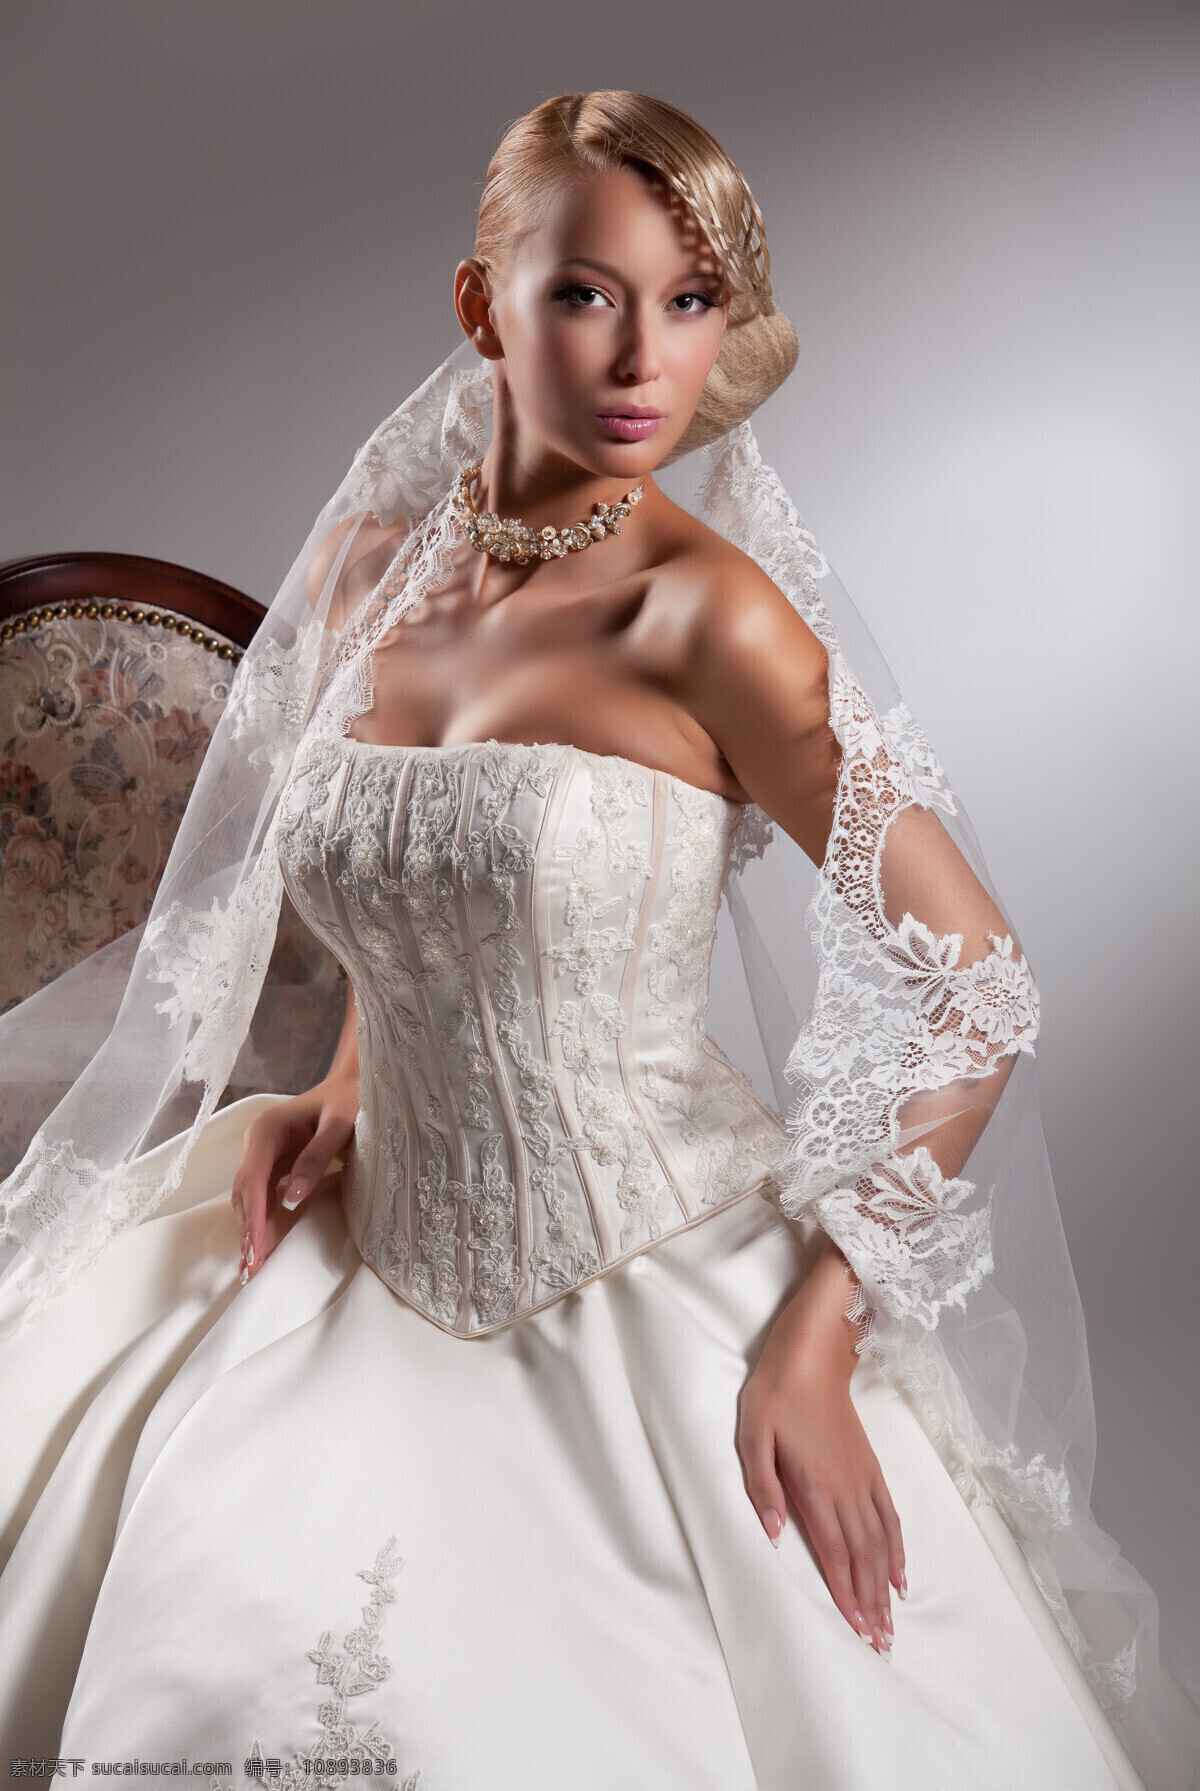 美丽 外国 新娘 女人 外国女人 婚纱 礼服 情侣图片 人物图片